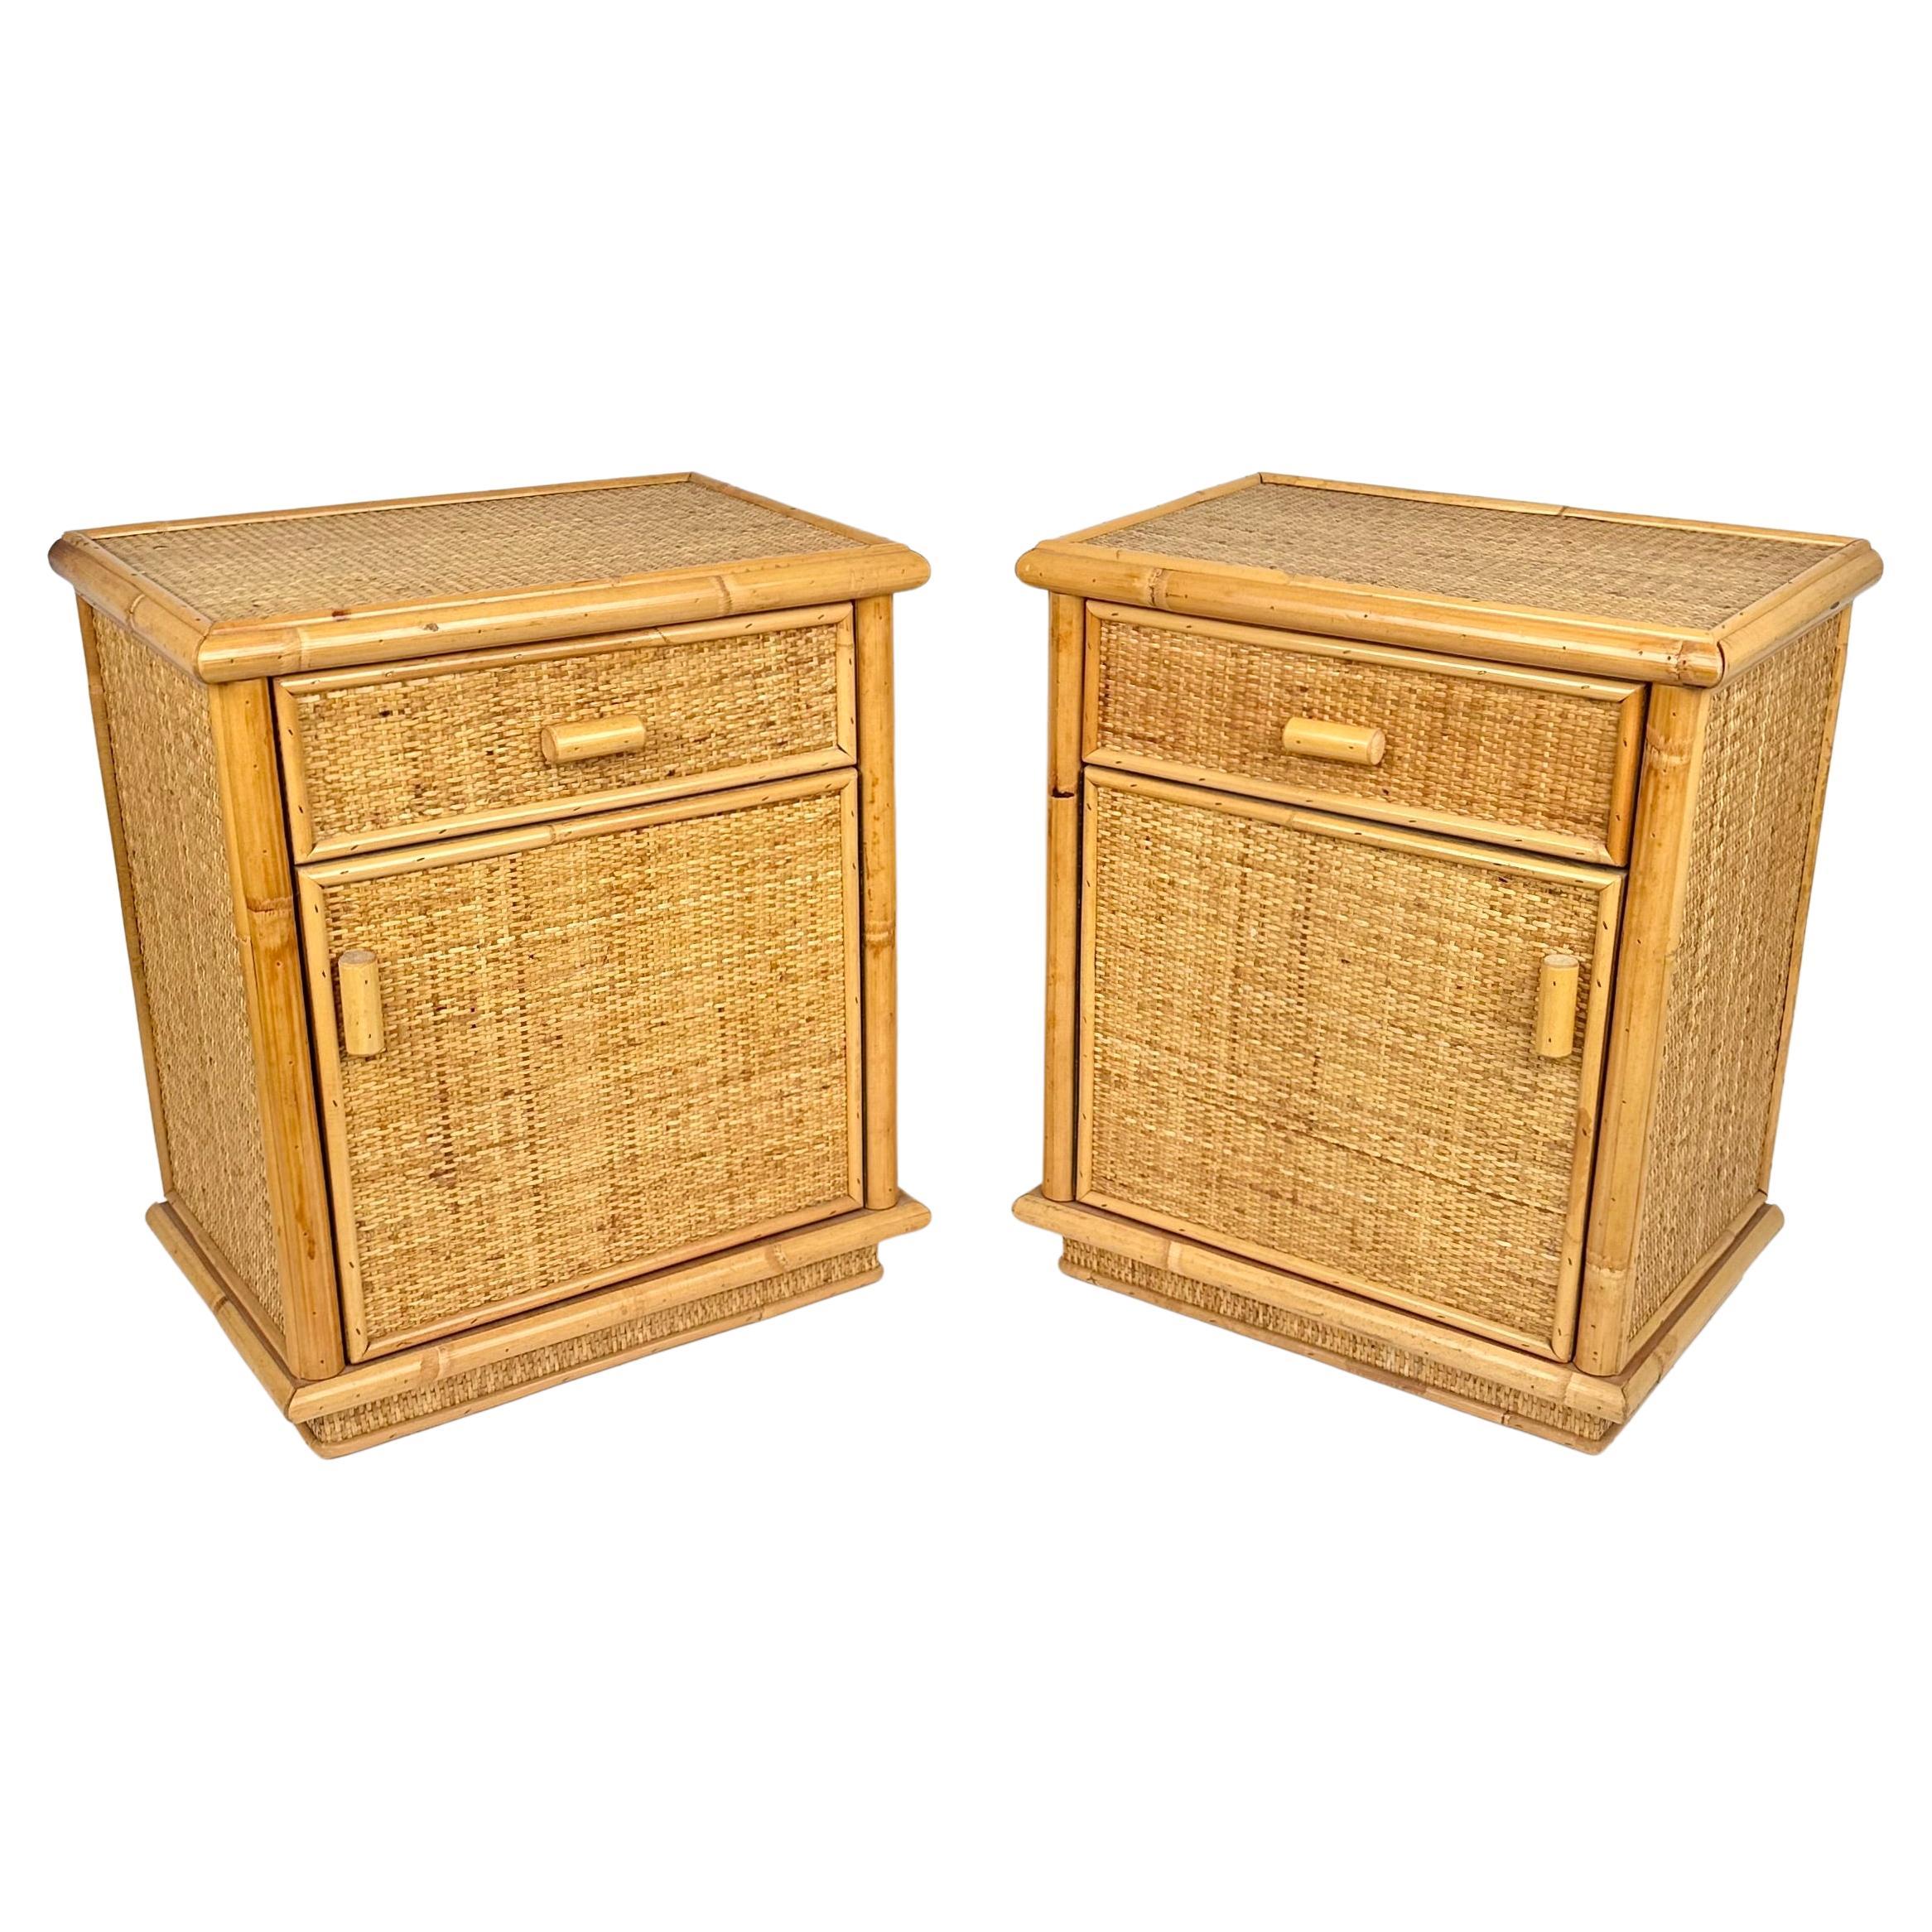 Paire de tables de chevet du milieu du siècle en bambou et rotin avec deux tiroirs.

Fabriqué en Italie dans les années 1970.